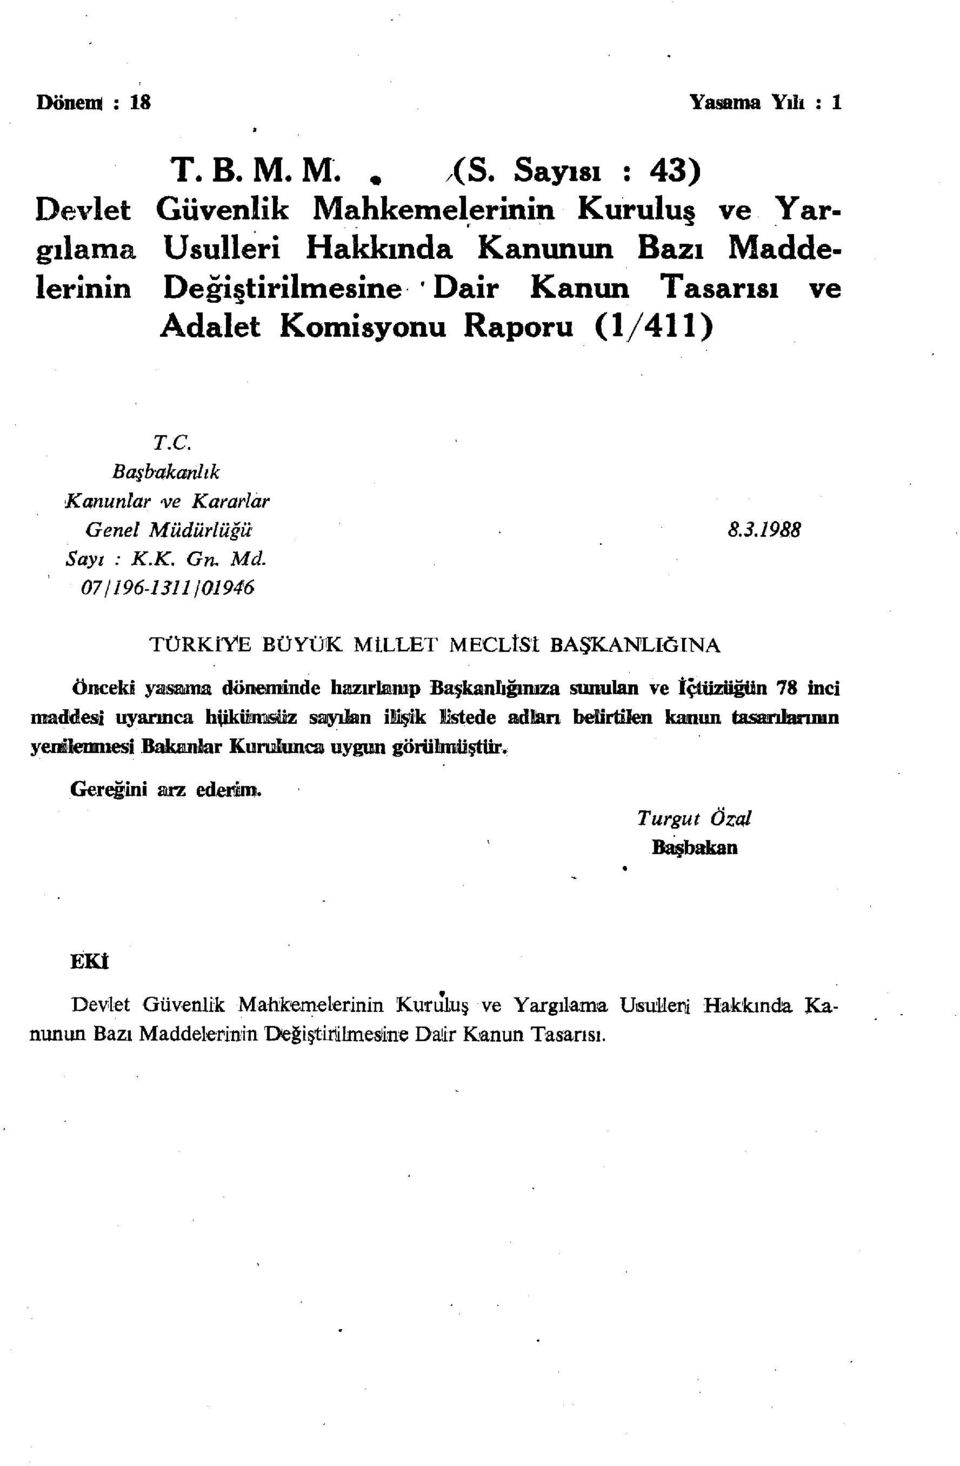 Başbakanlık Kanunlar -ve Kararlar Genel Müdürlüğü 8.3.1988 Sayı : K.K. Gru Md.